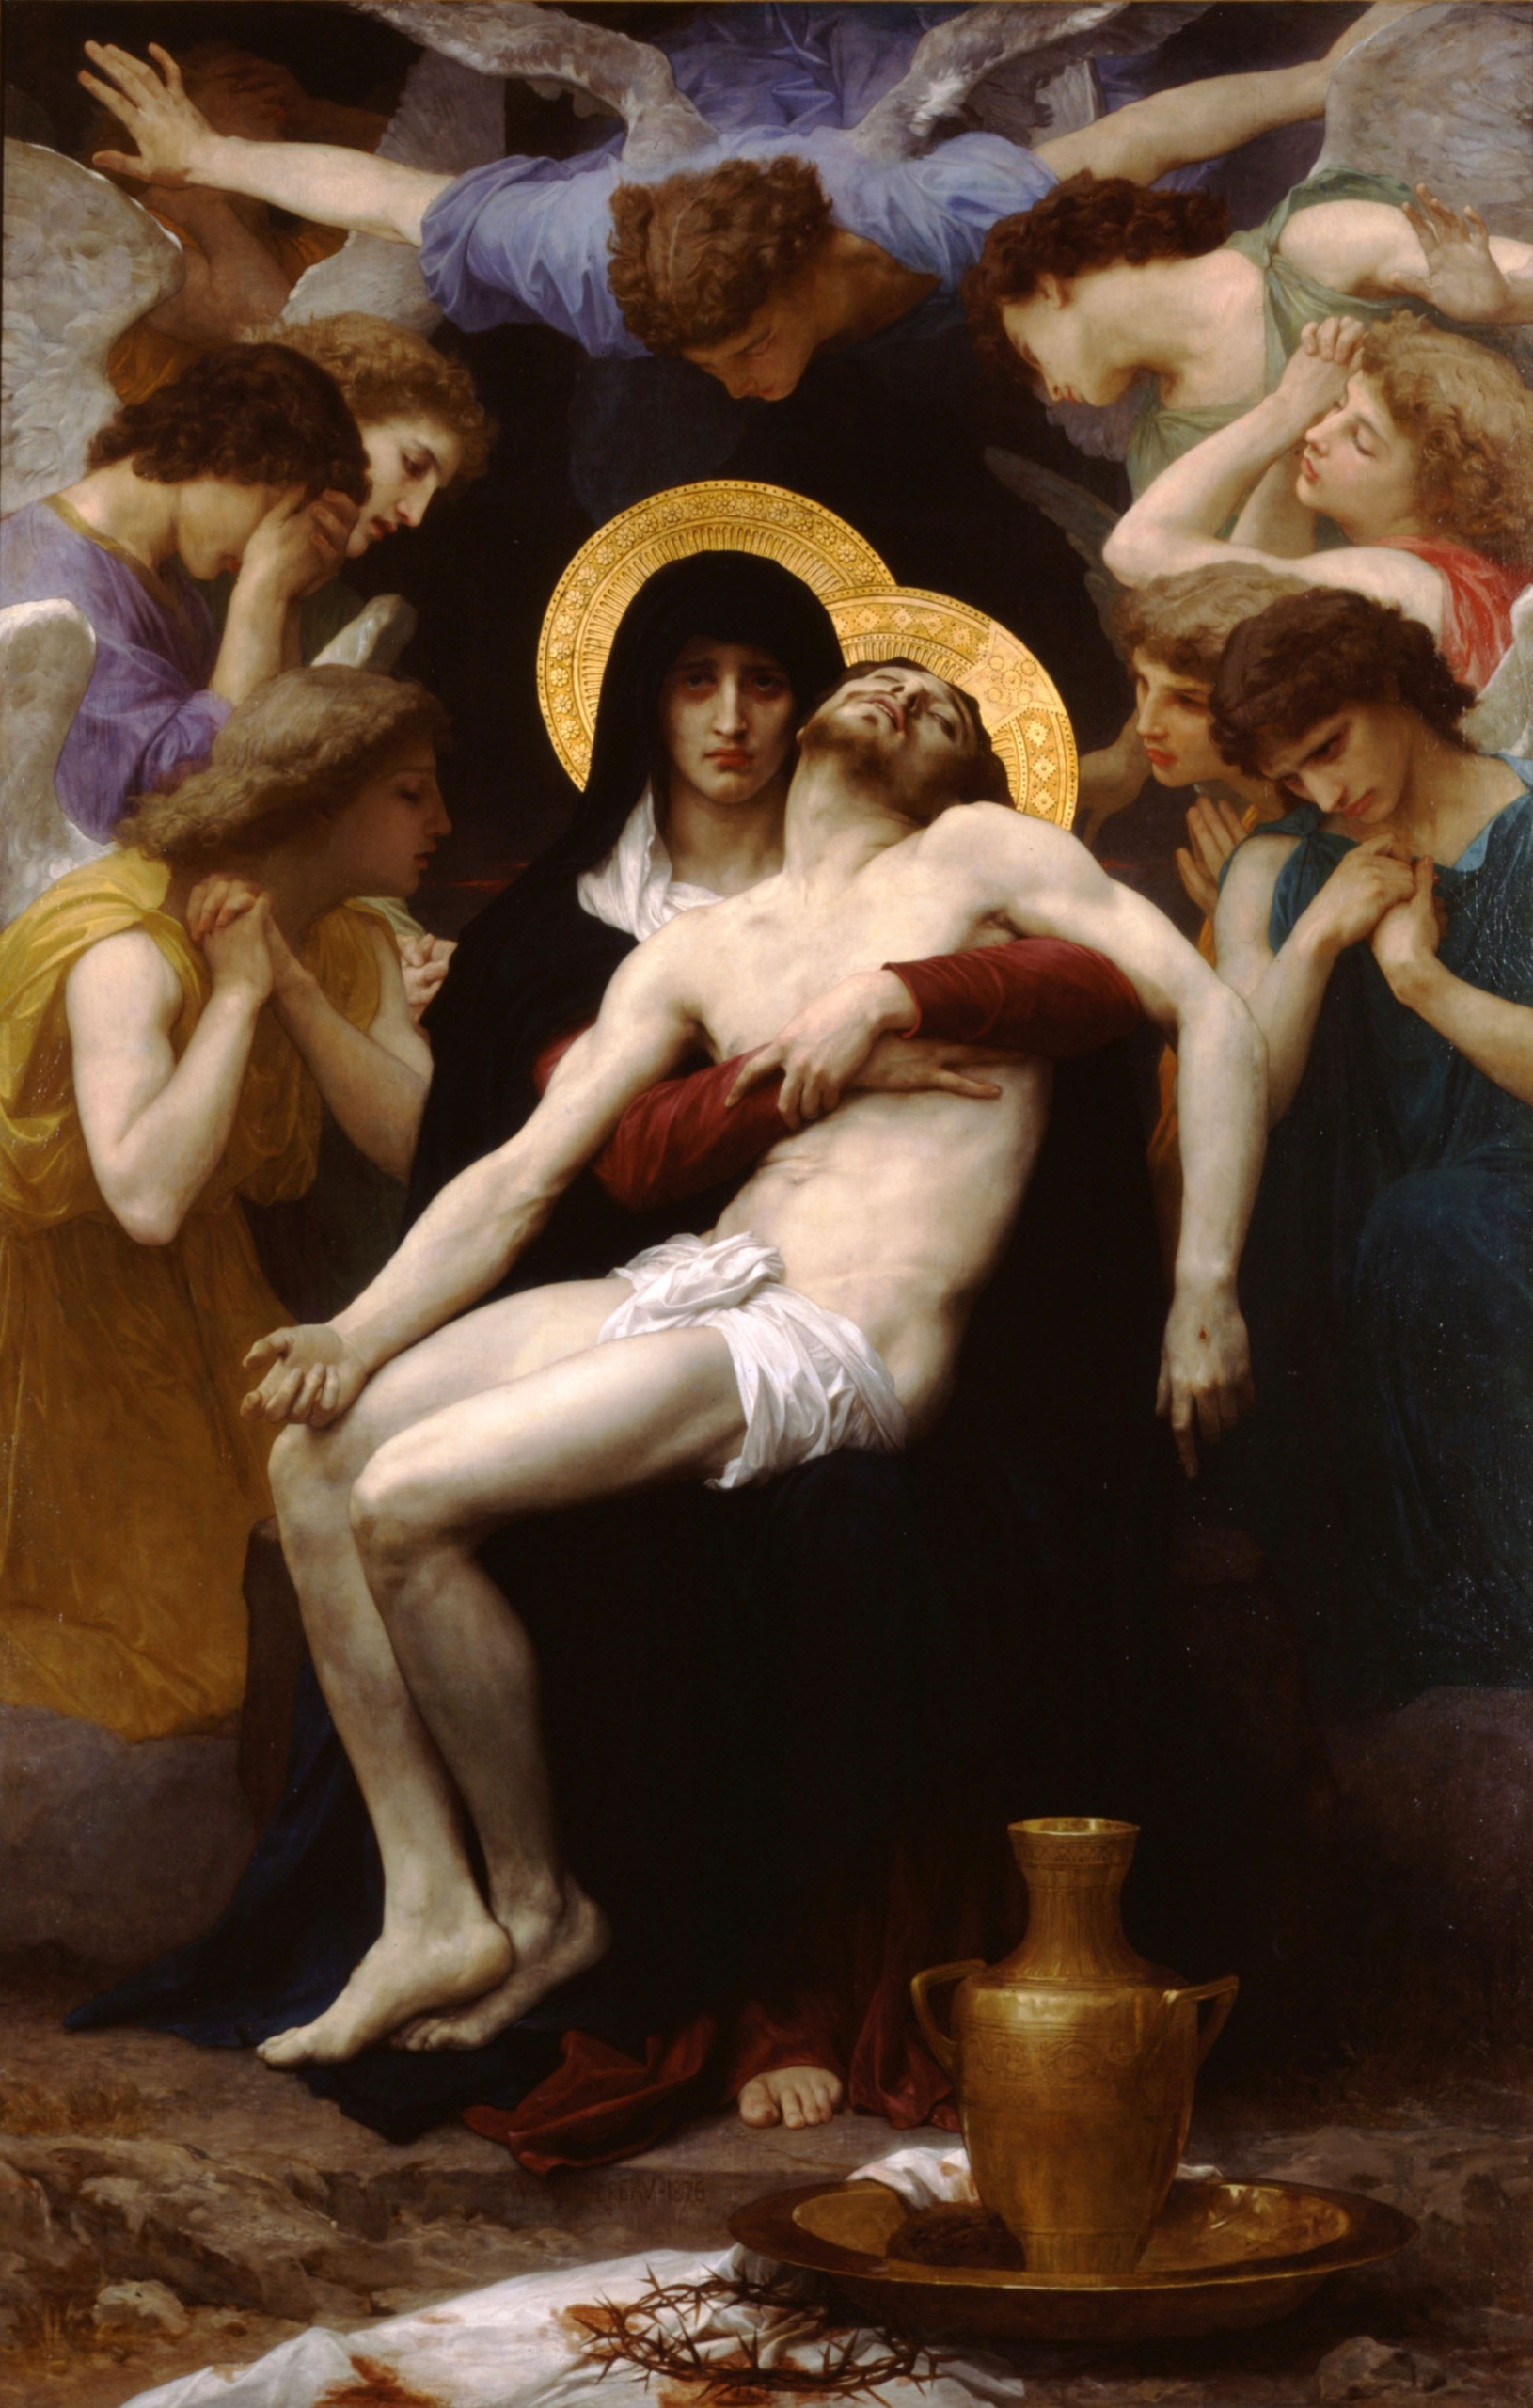 Tác phẩm “Pietà,” khoảng năm 1876, vẽ bởi họa sĩ William-Adolphe Bouguereau. Tranh sơn dầu trên vải canvas. Bộ sưu tập Tư nhân. (Ảnh: Tài liệu công cộng)